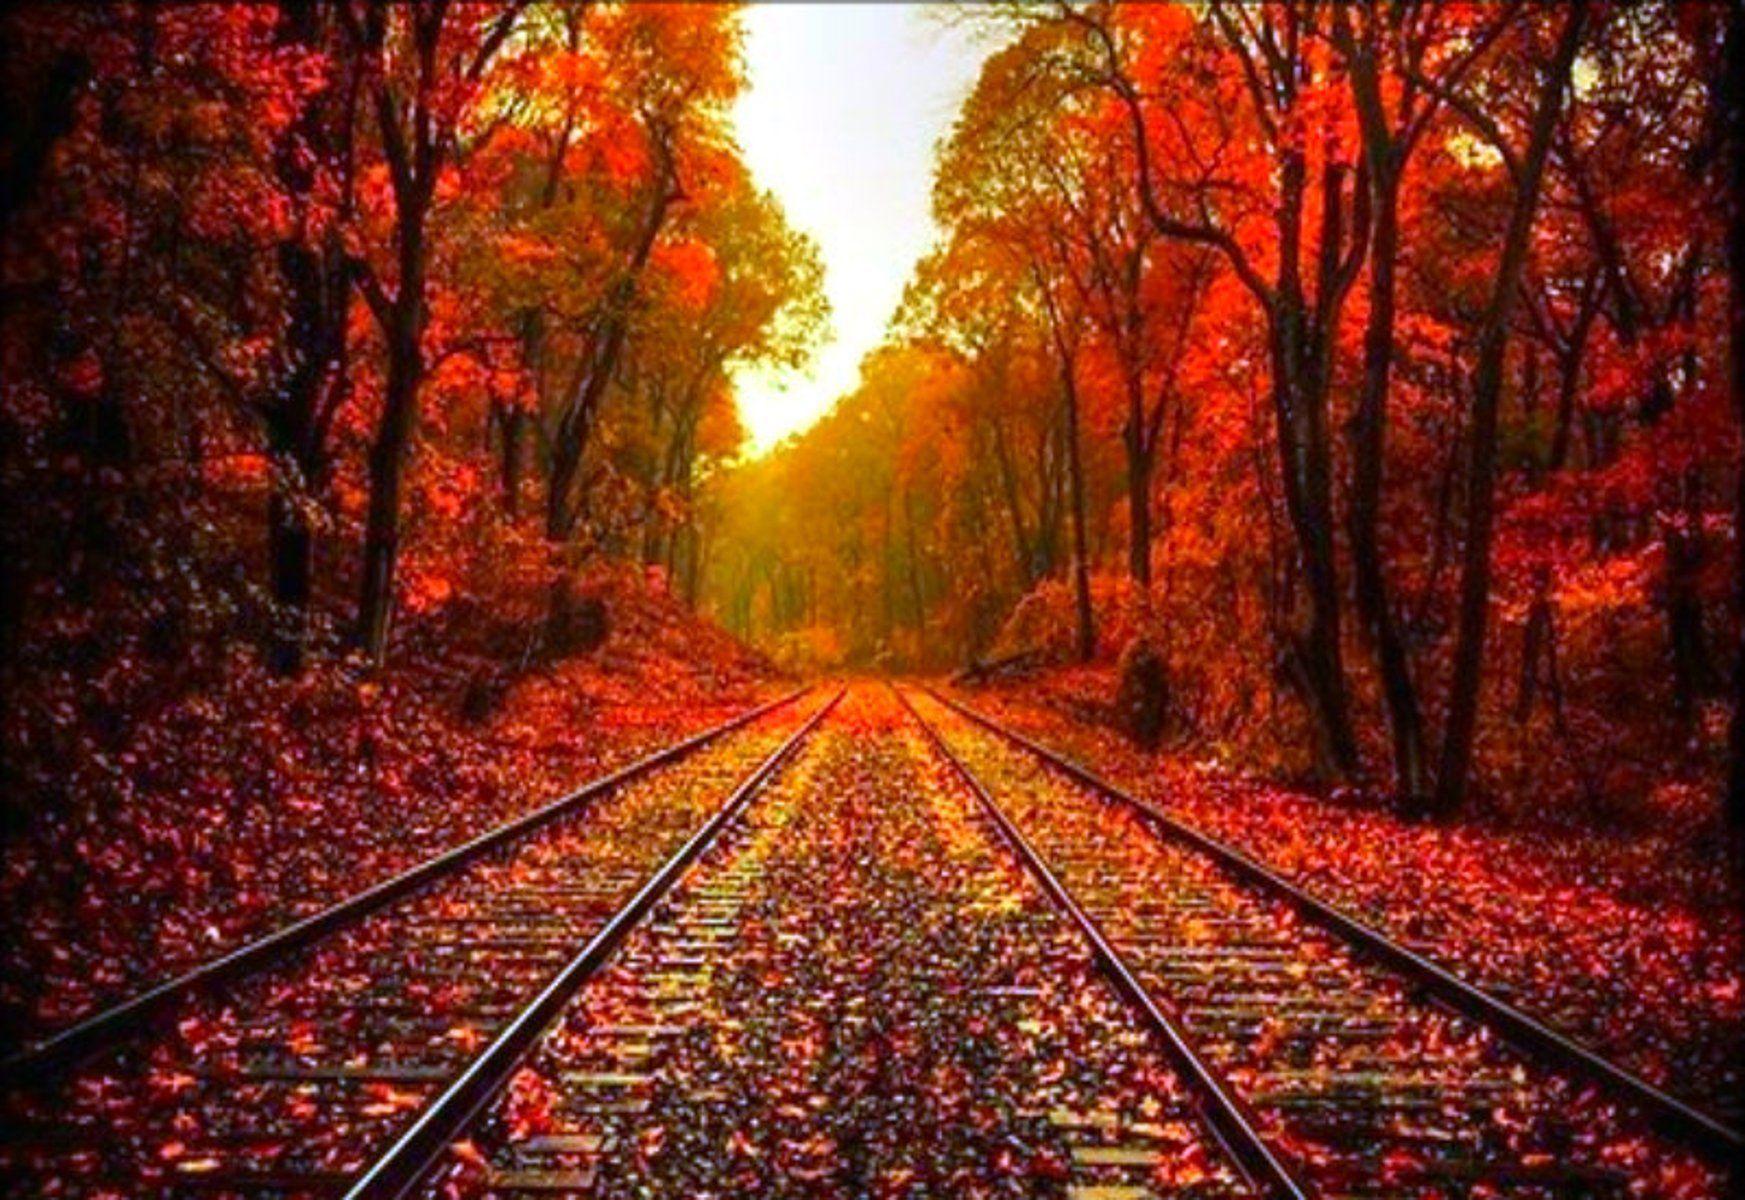 Autumn Fall Wallpapers - Top Những Hình Ảnh Đẹp